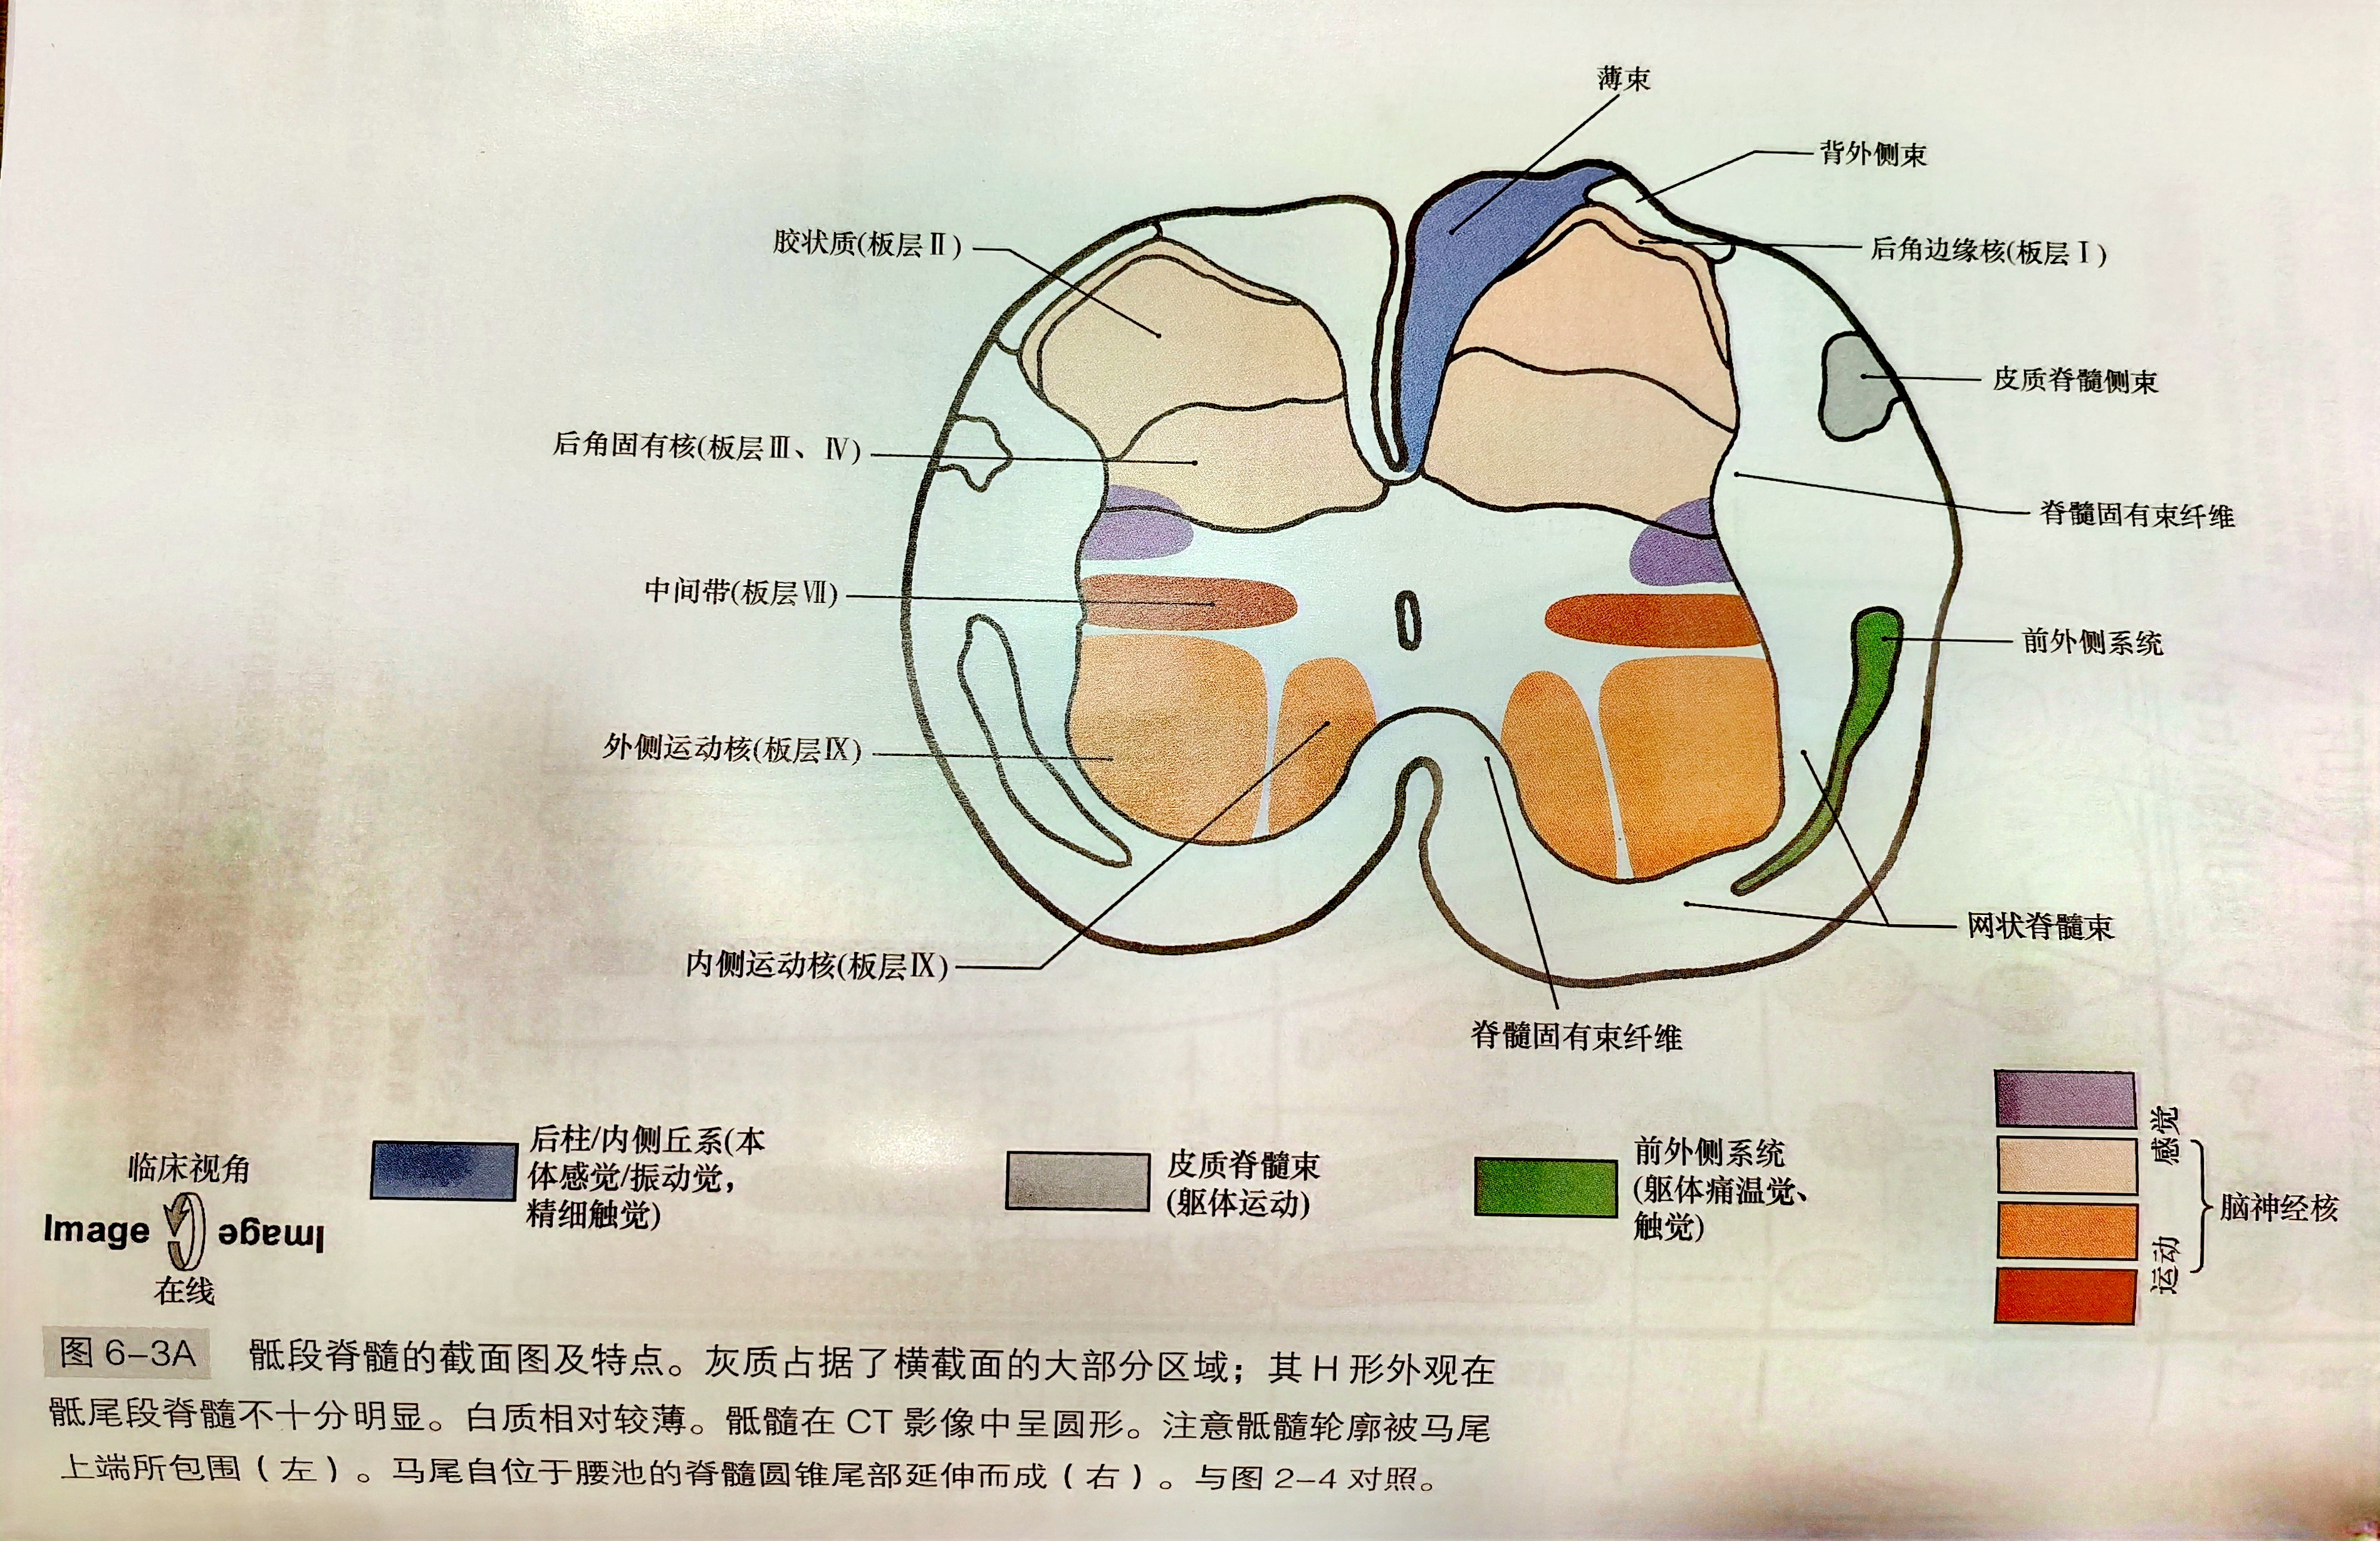 脊髓结构及CT和MRI表现